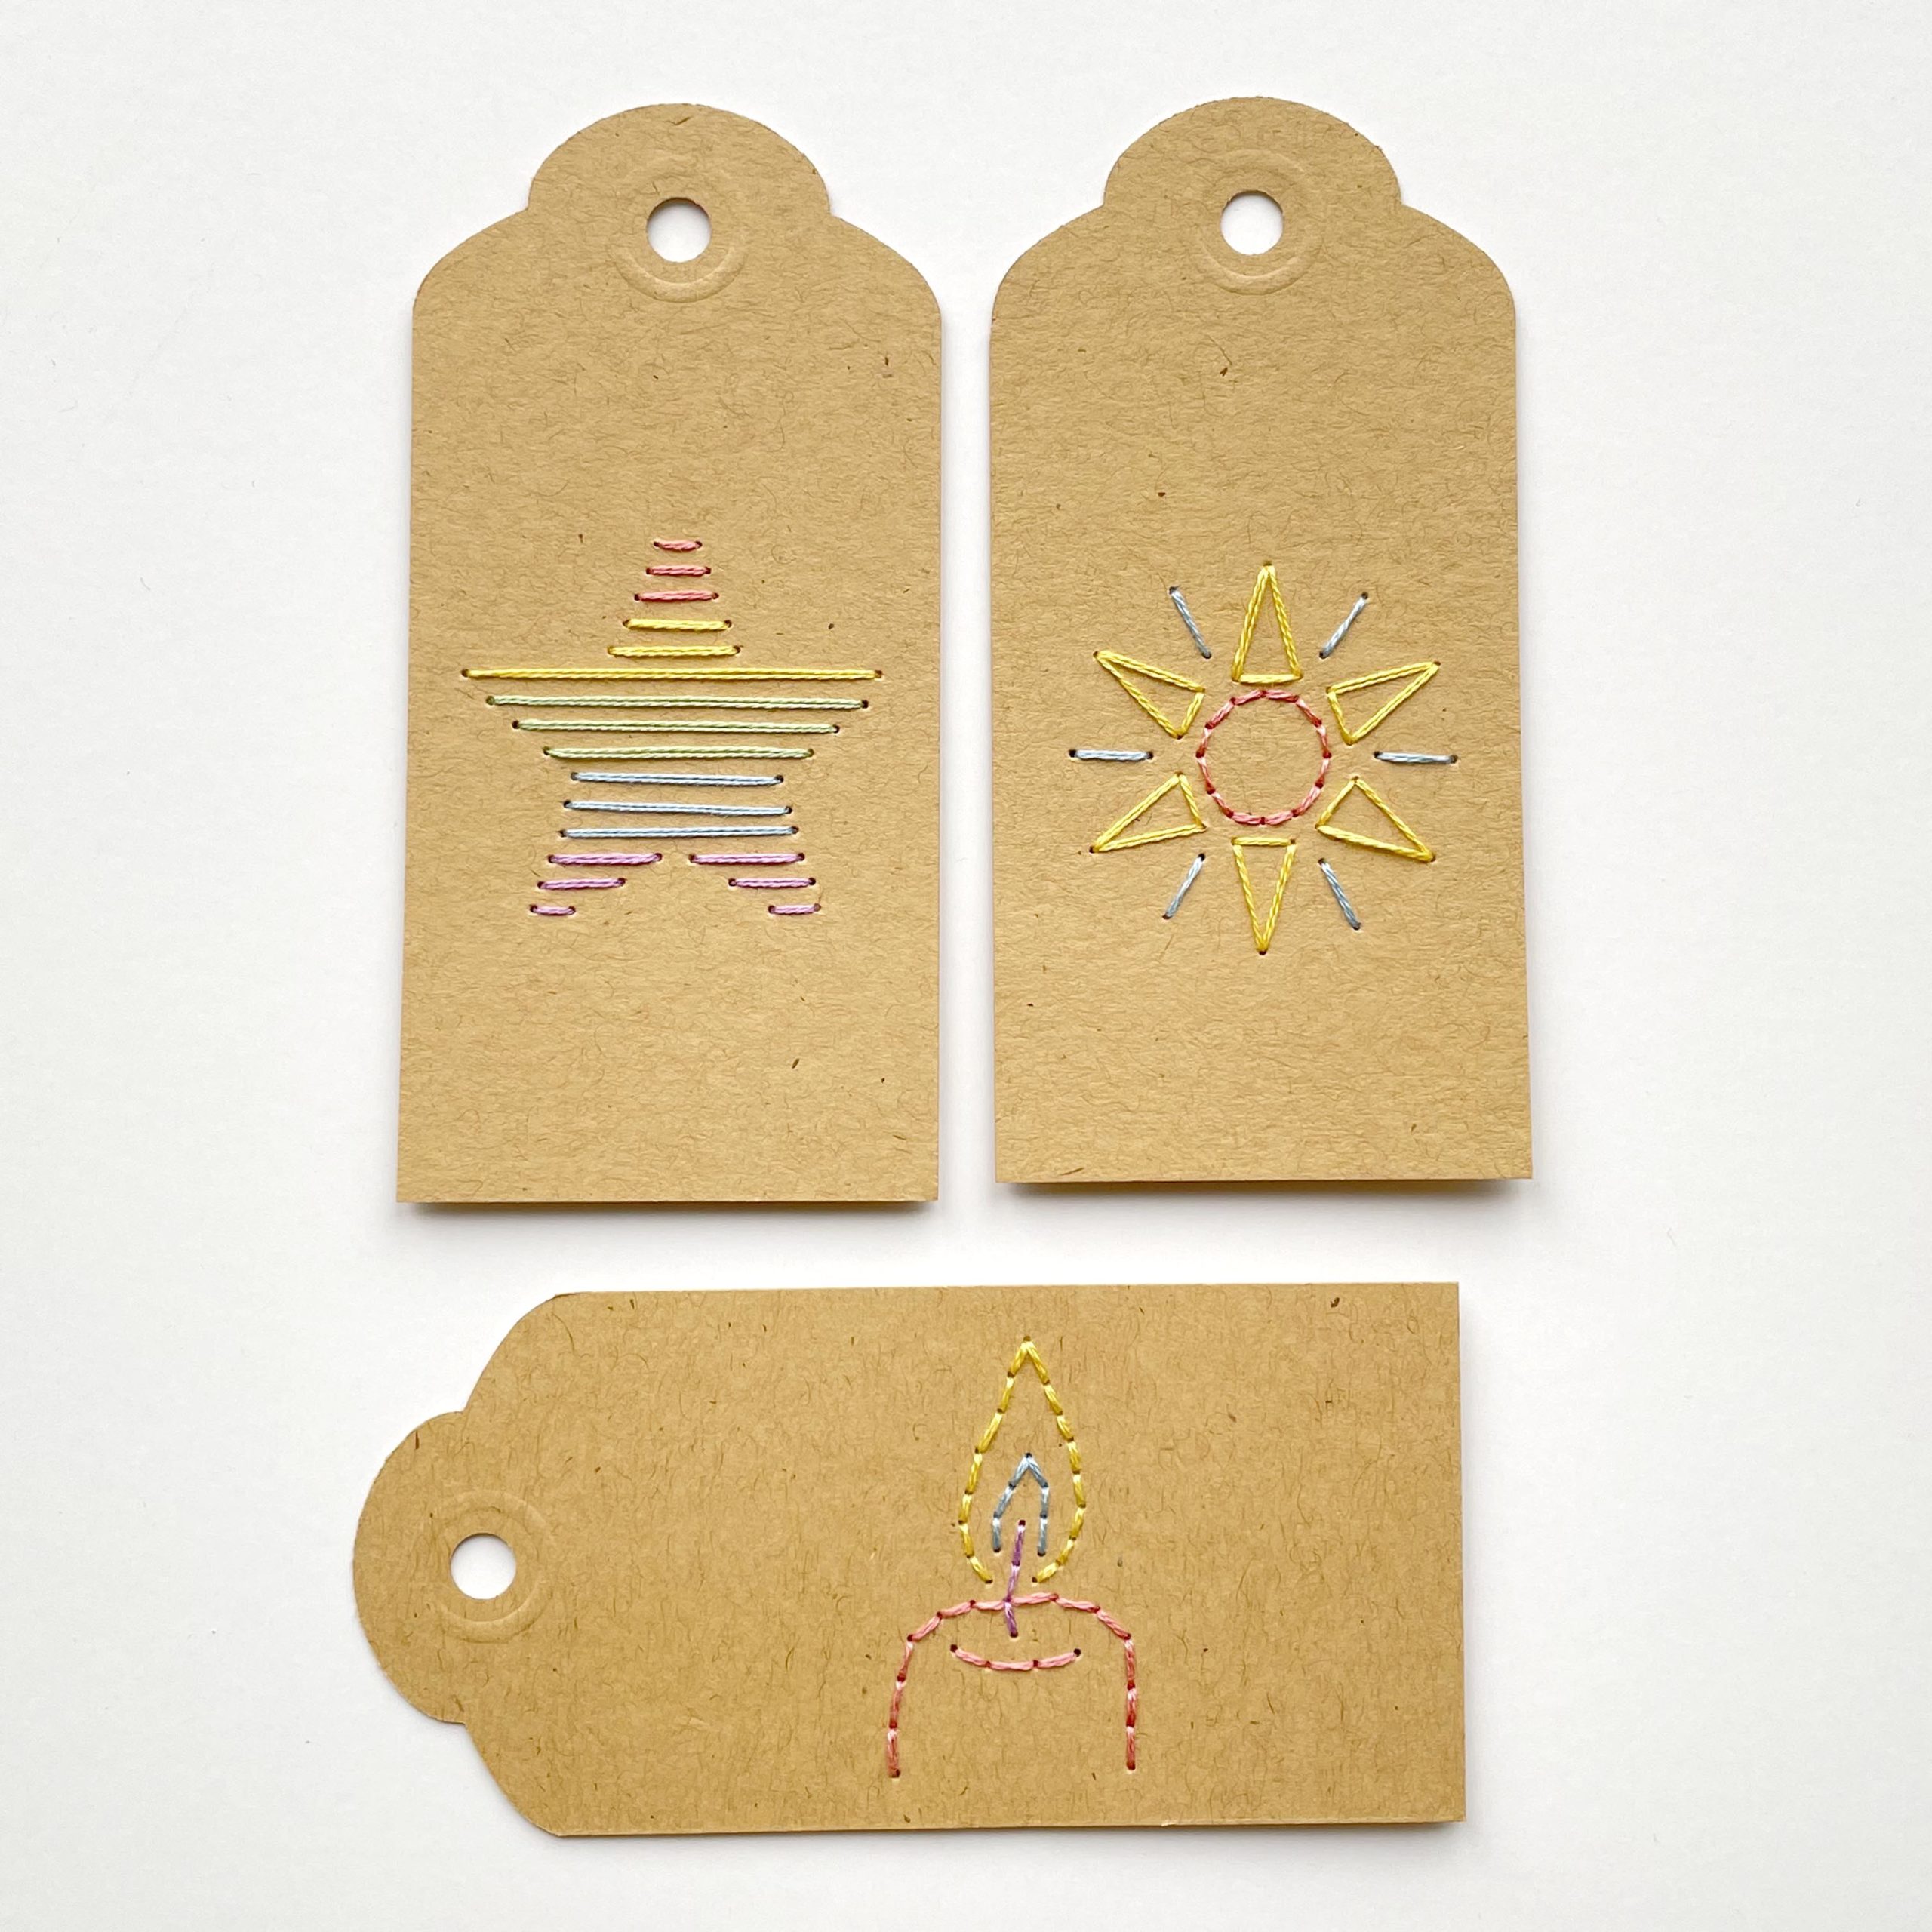 Shine Your Light mini paper embroidery patterns by Mayuka Fiber Art